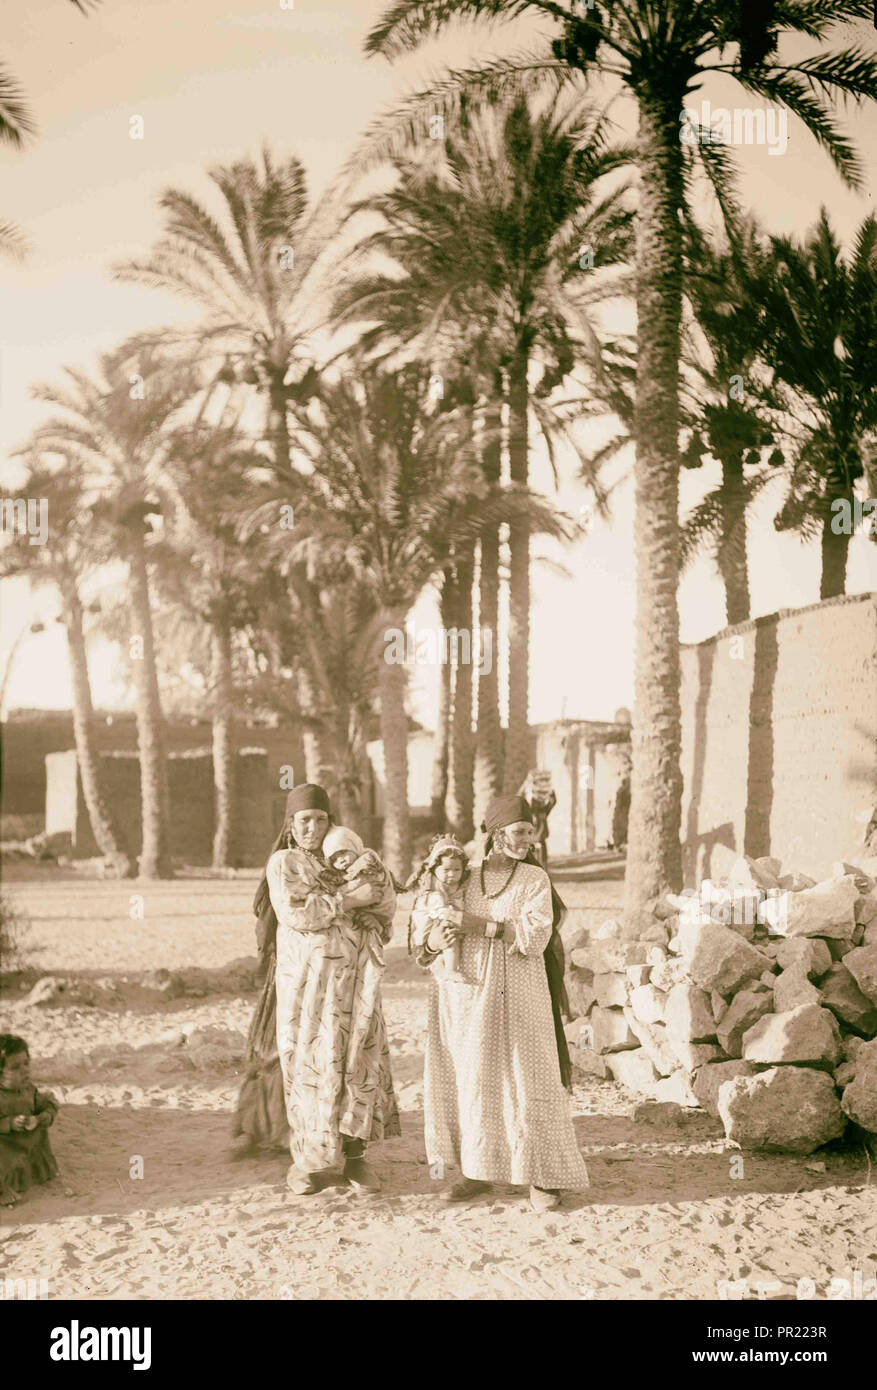 L'Égypte. Types d'agriculture. Paysan avec leurs enfants dans la palmeraie. 1934, l'Égypte Banque D'Images